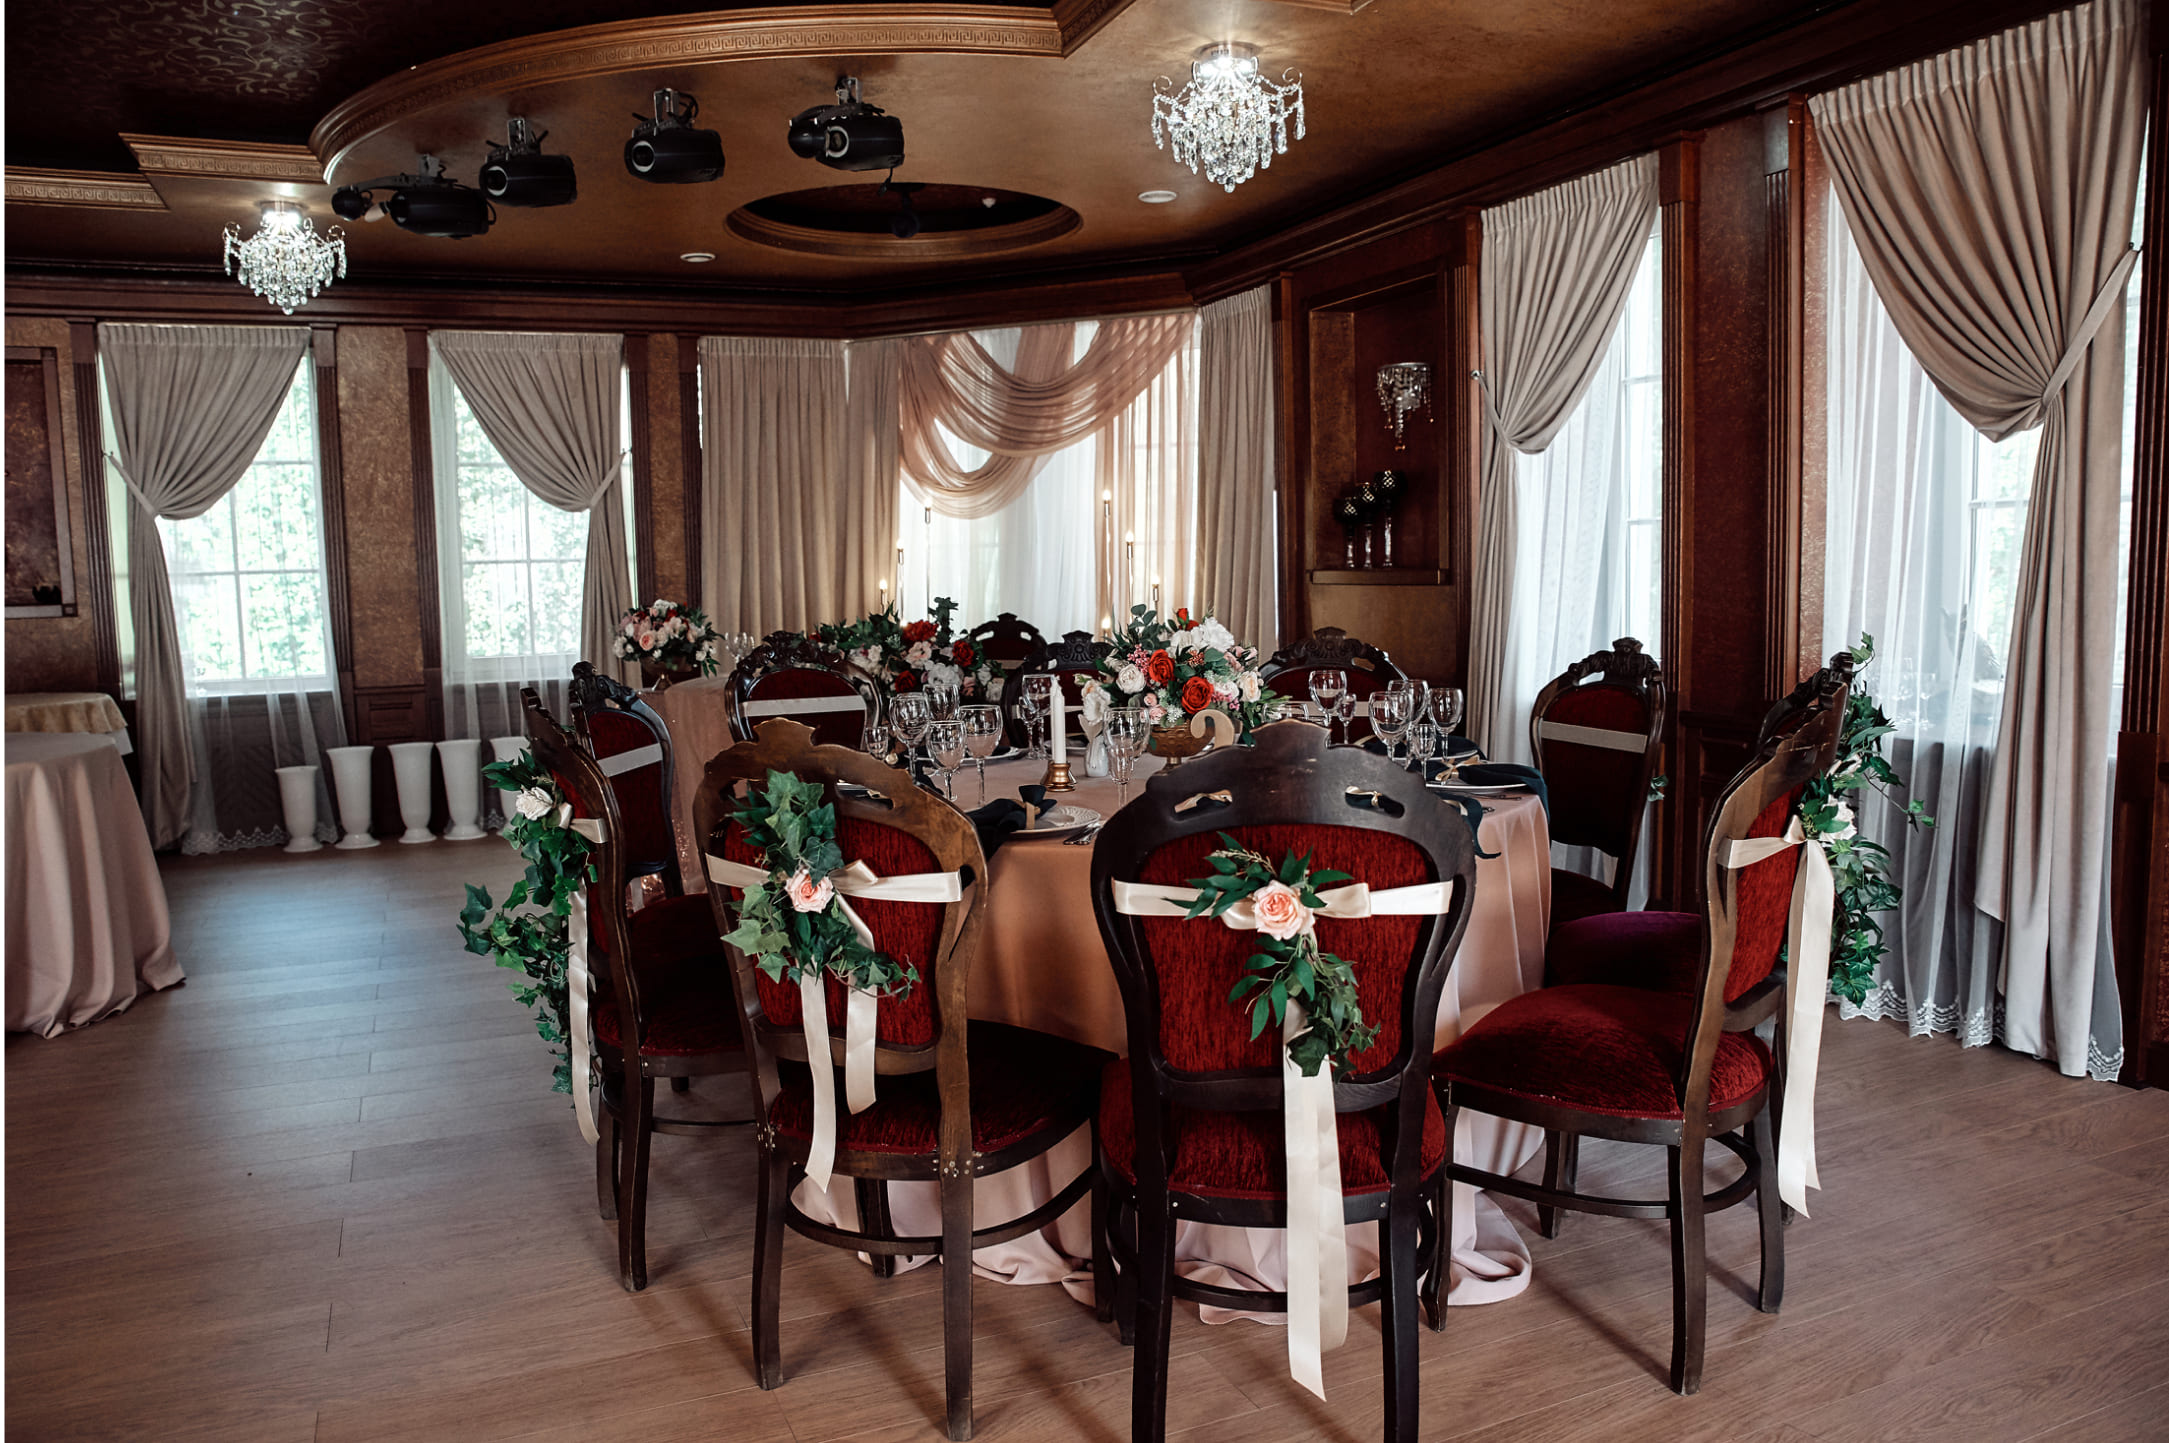 Празднование юбилея в ресторане: преимущества и особенности - блог "Дворянское гнездо"